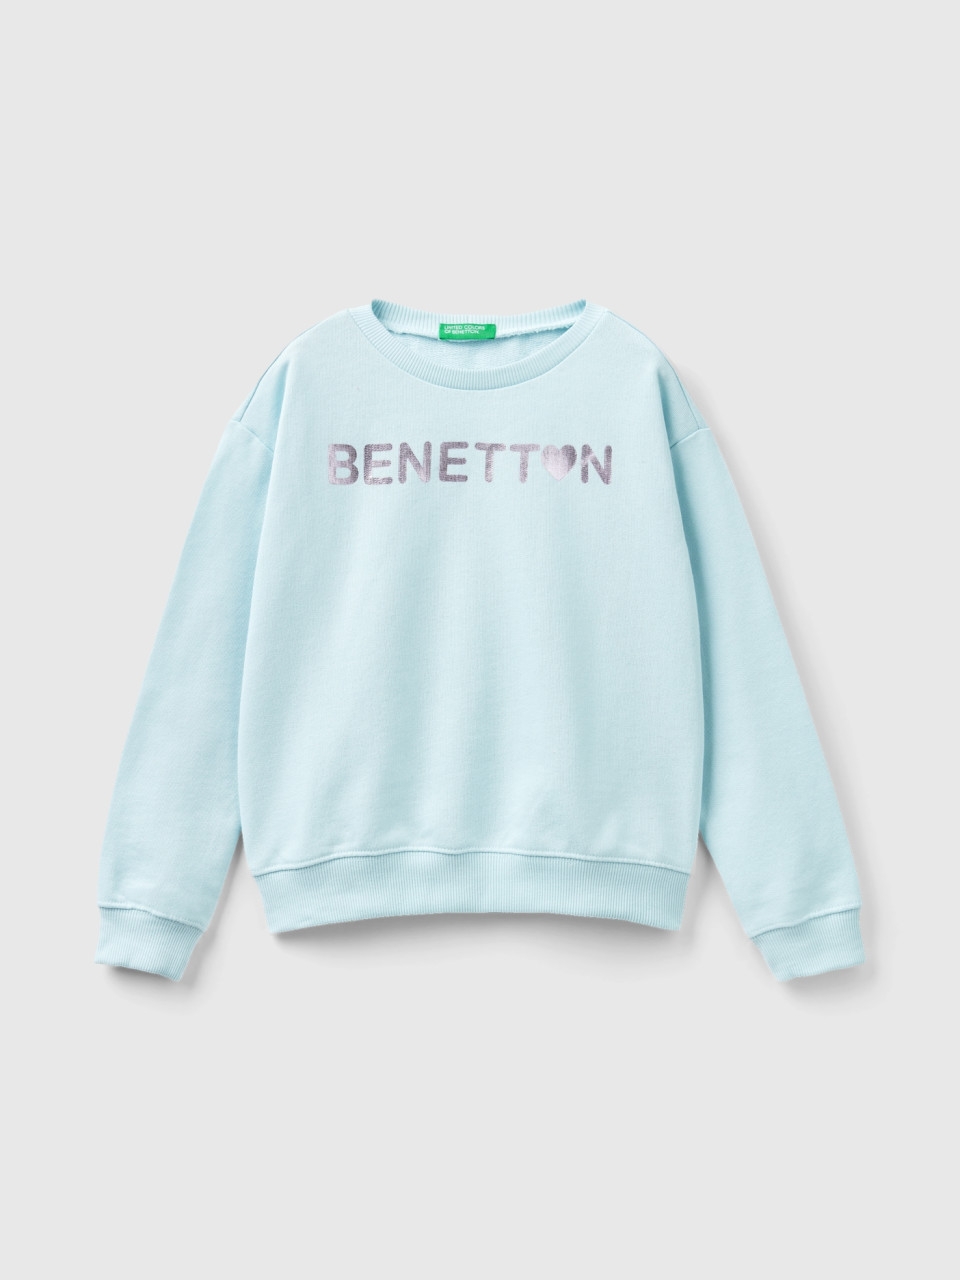 Benetton, Sweatshirt Aus 100% Baumwolle Mit Logo, Türkisblau, female